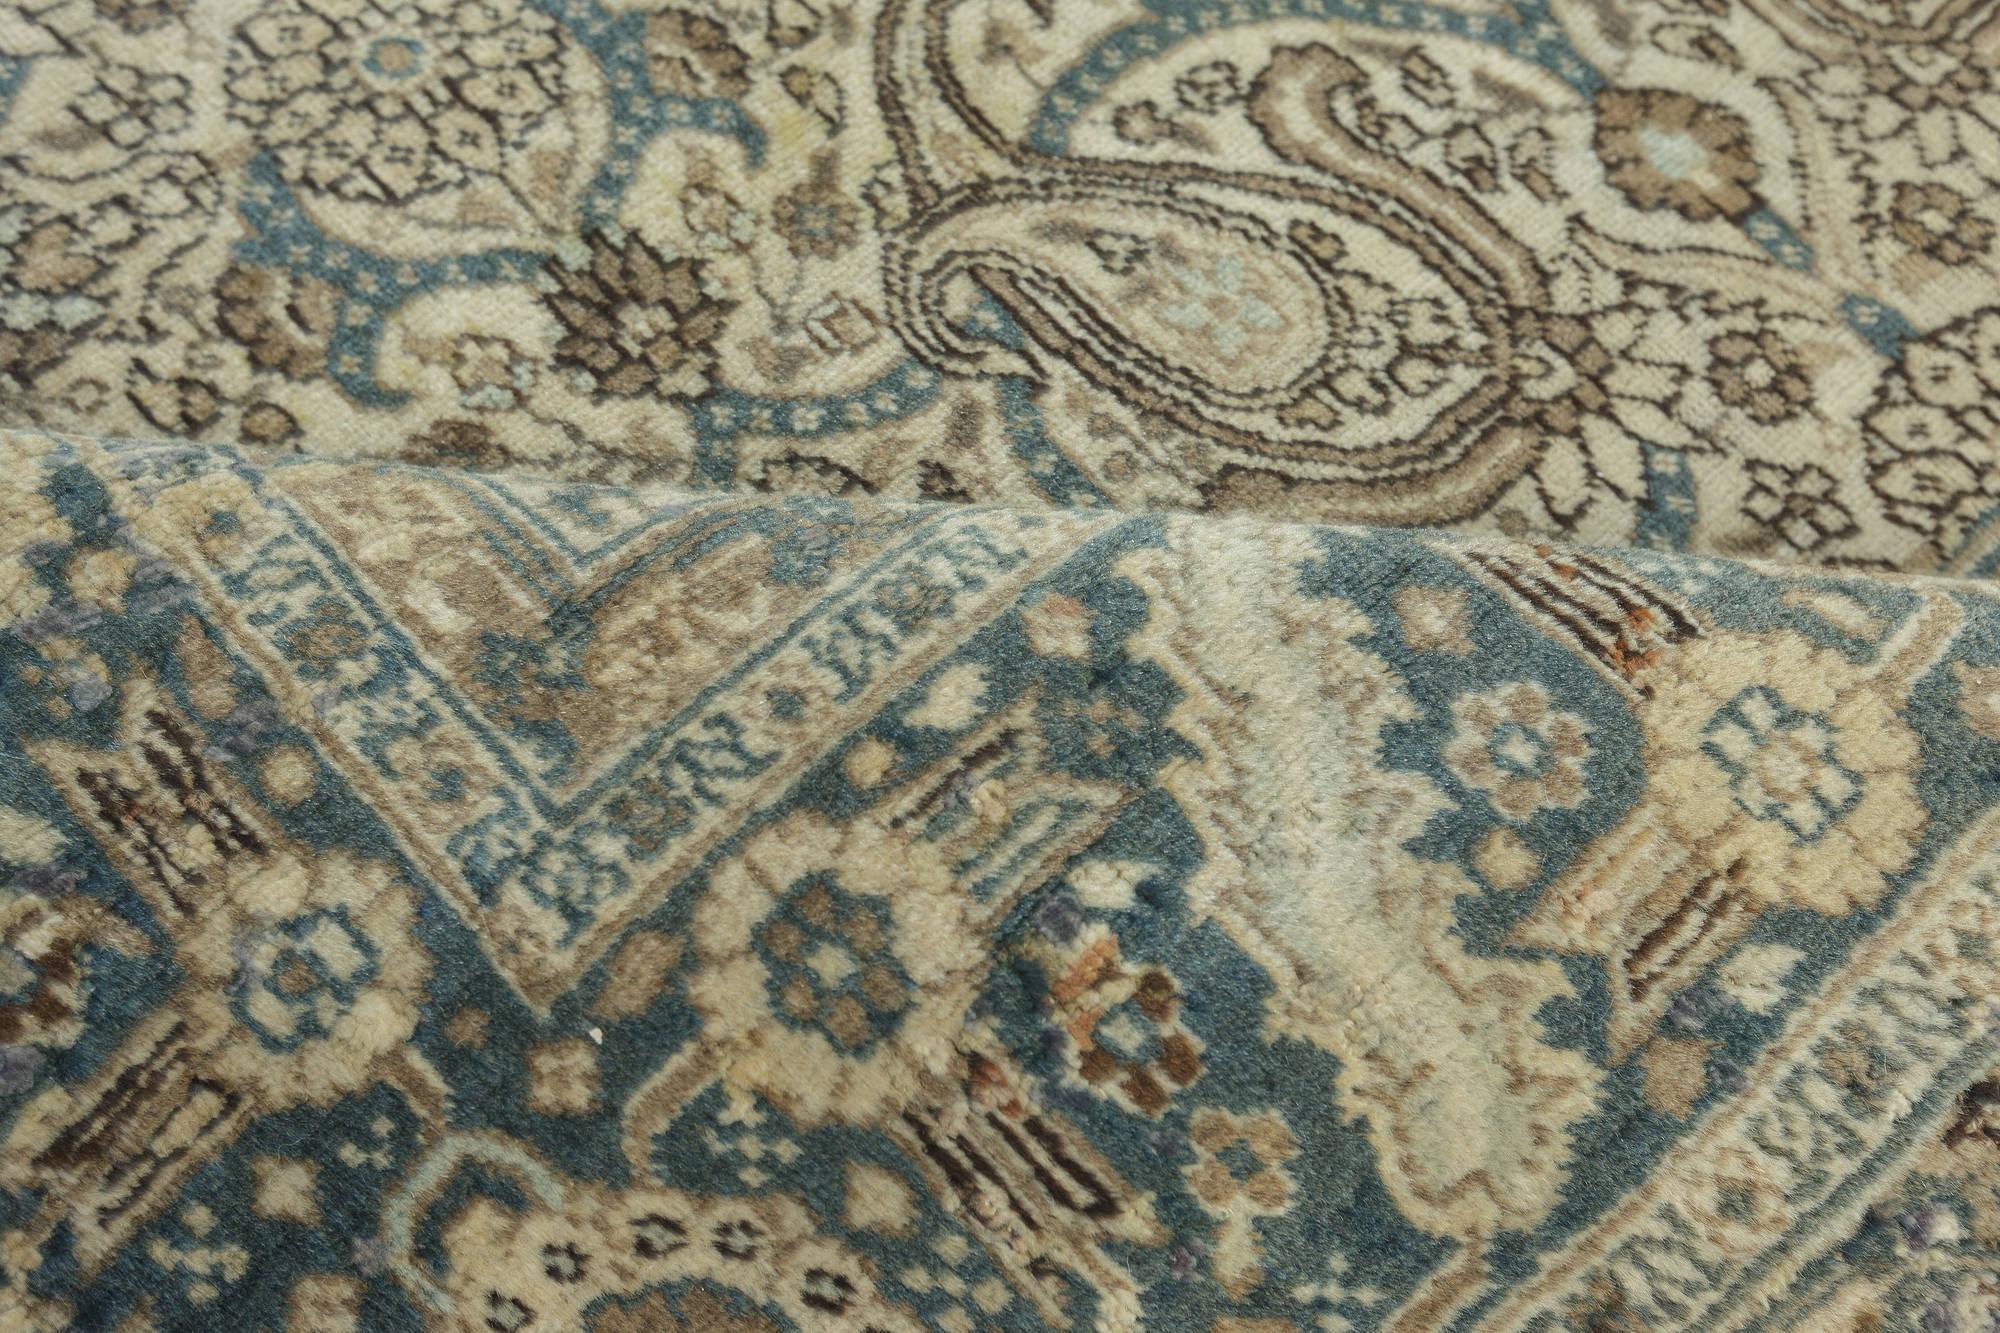 Authentique tapis persan Tabriz en beige, bleu, marron, gris
Taille : 292 × 342 cm (9'7